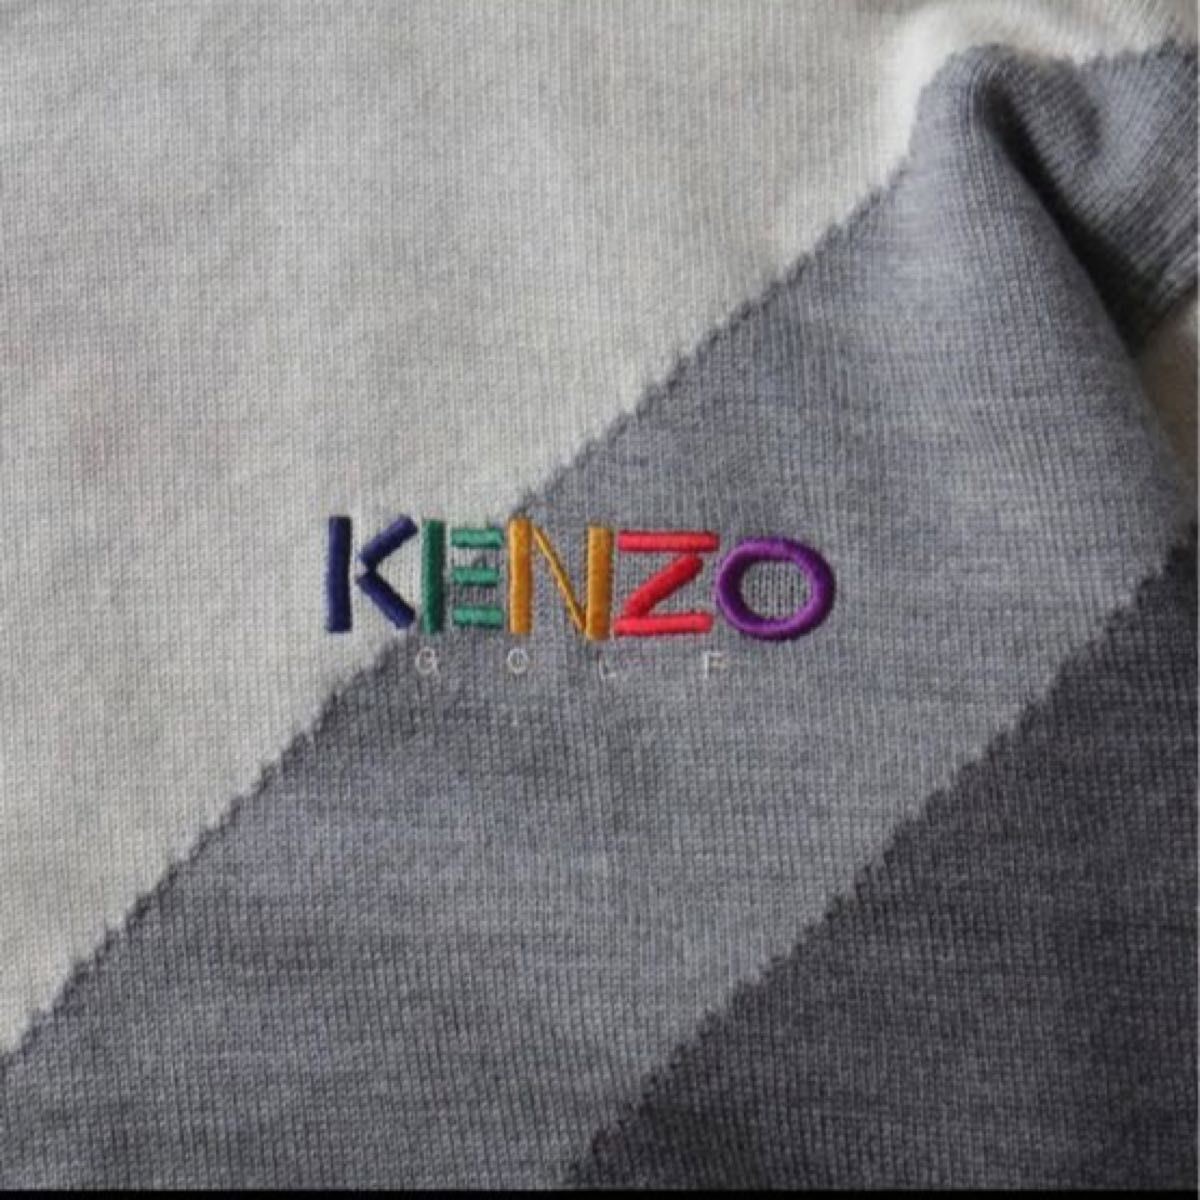 KENZO ケンゾー アーガイル ダイヤ柄 カラフル ニット セーター 2 ニットセーター ウールセーター ウール